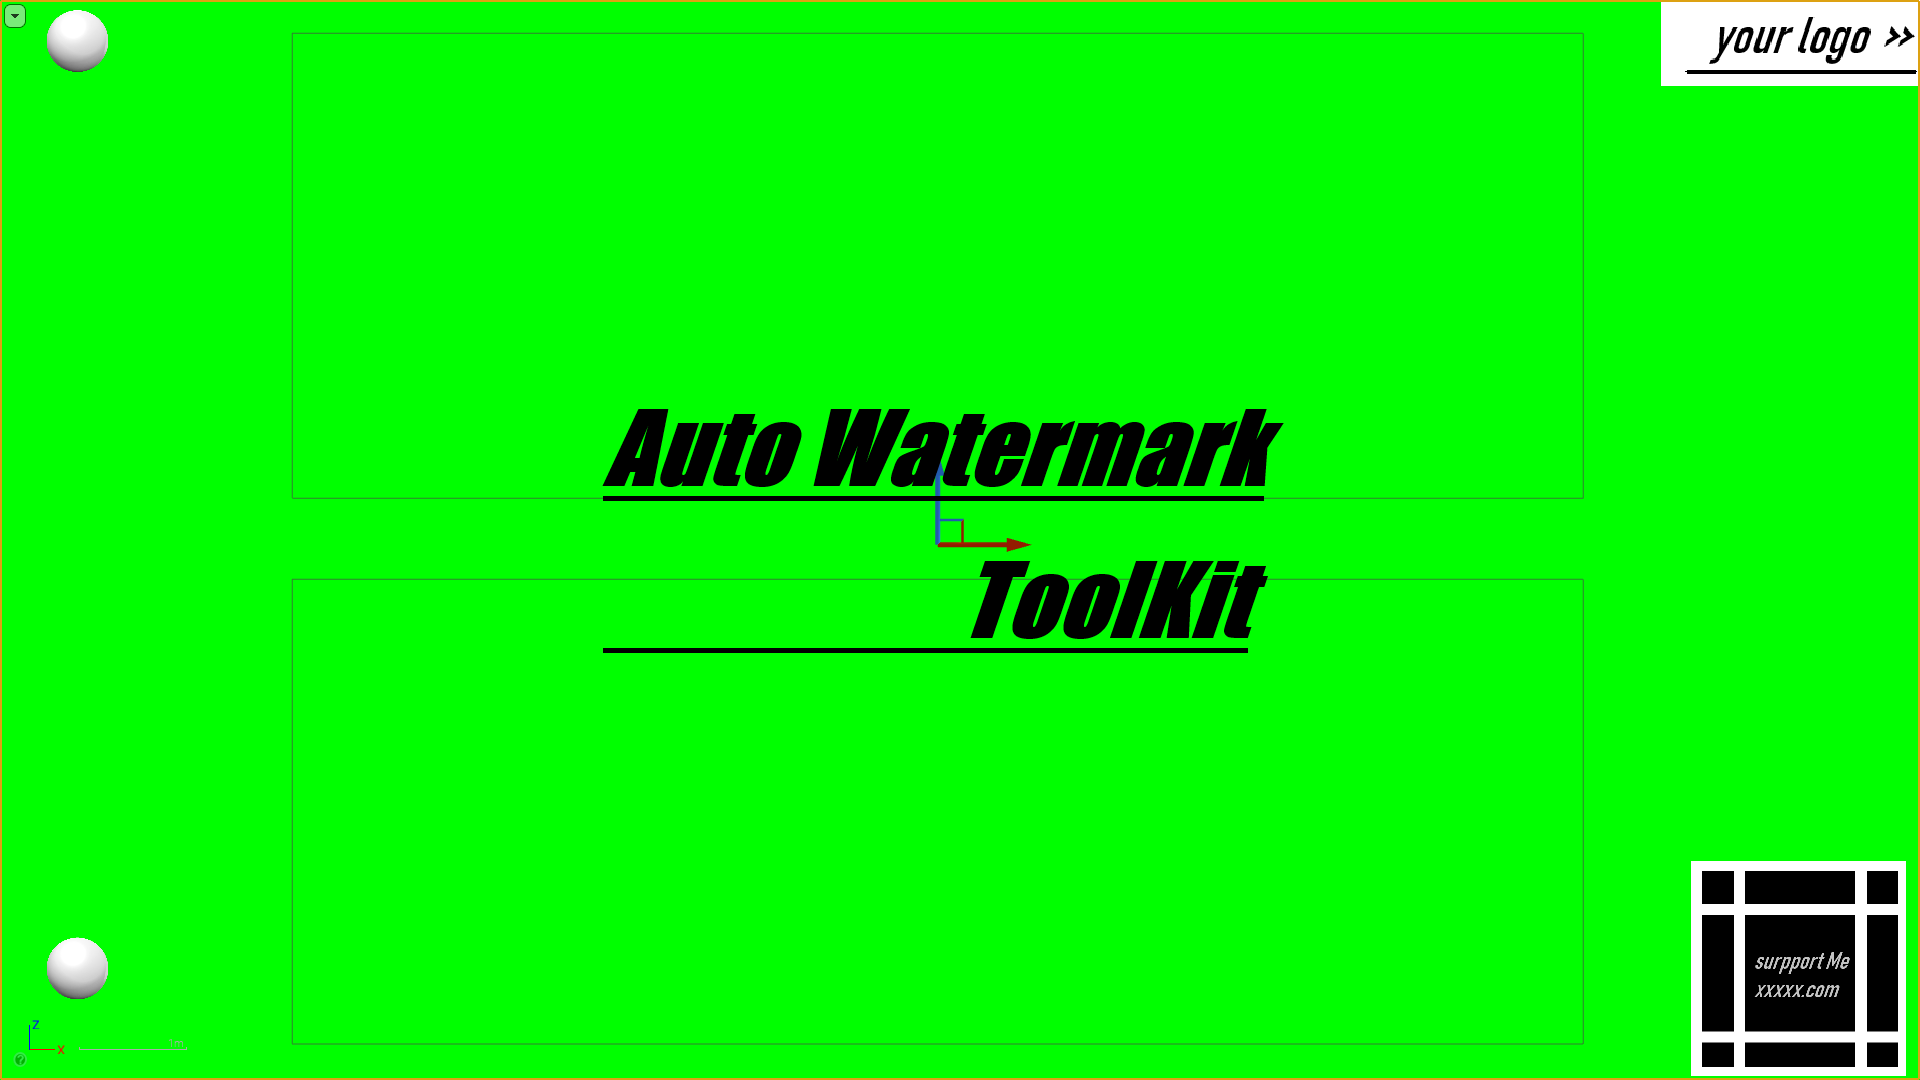 Auto Watermark Toolkit